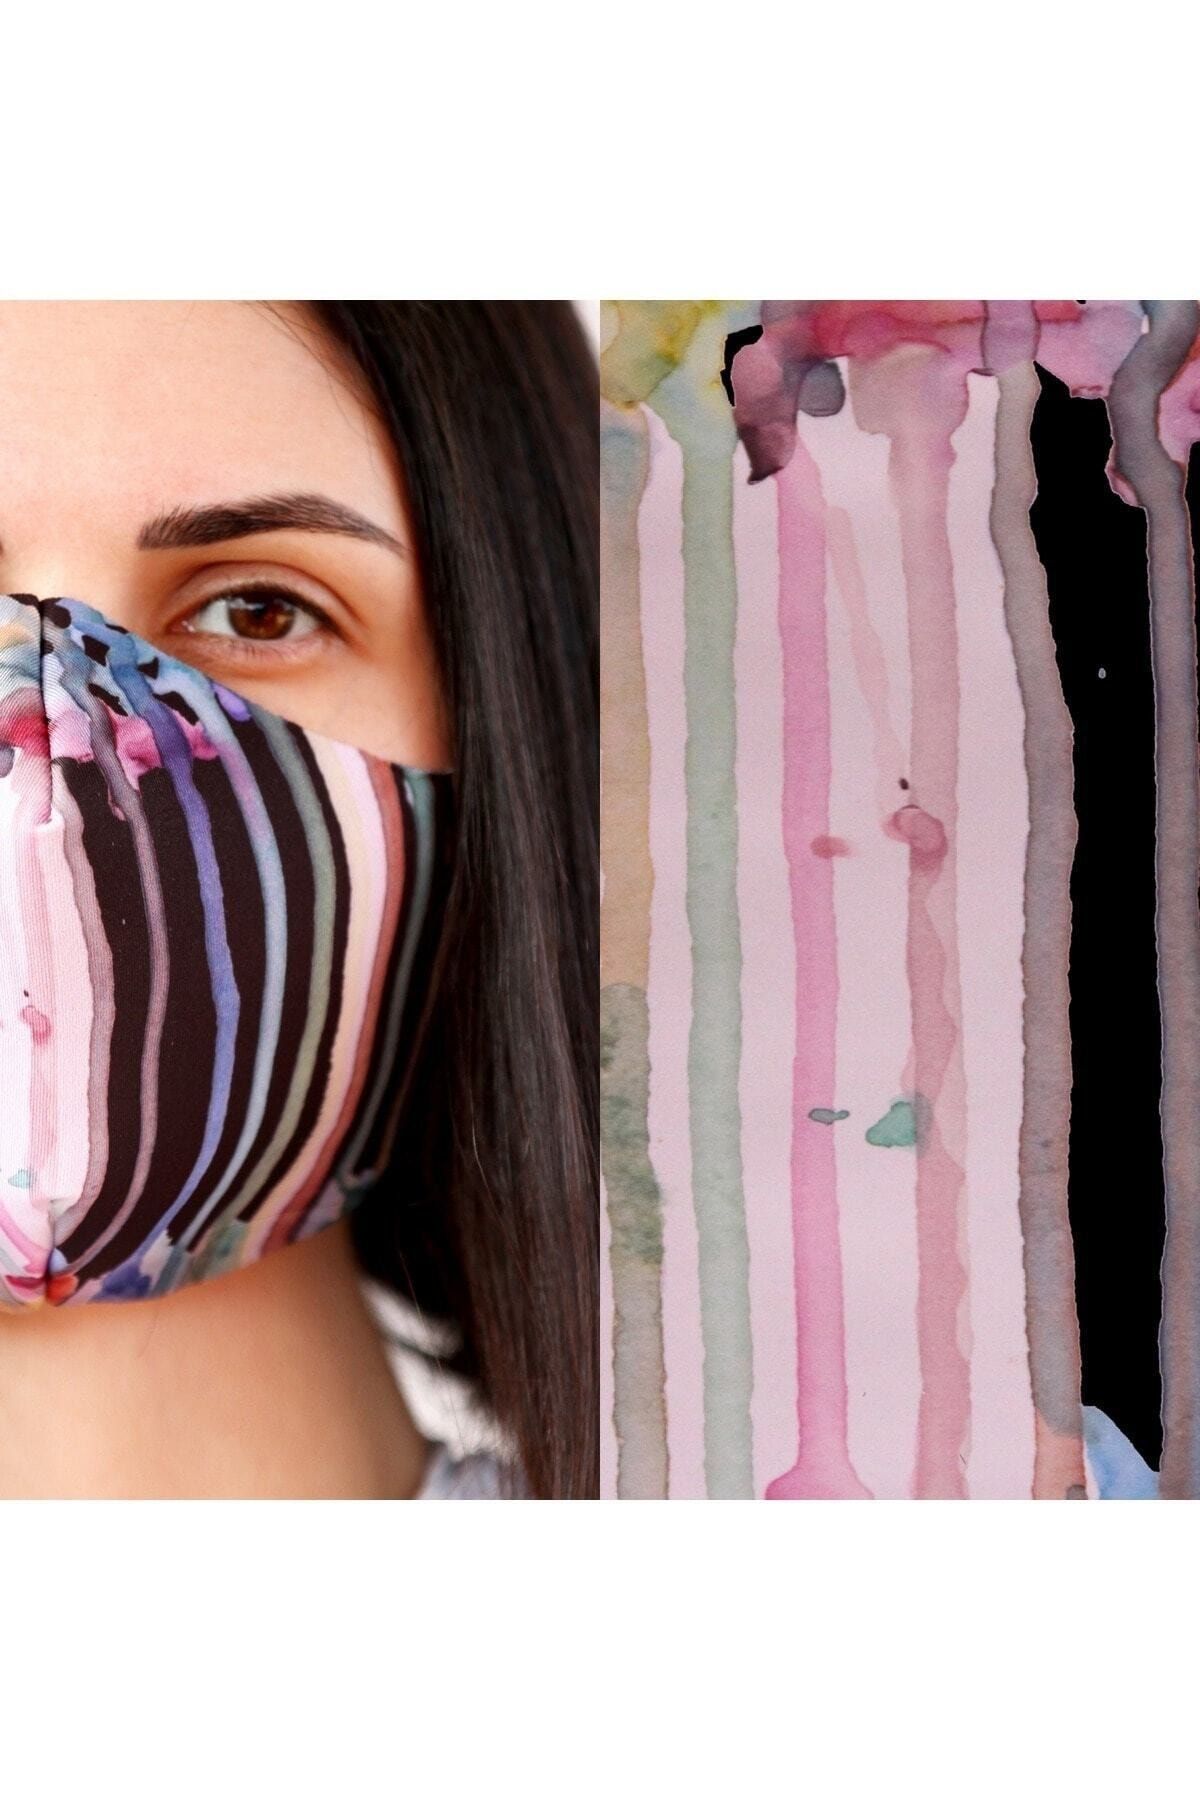 Eight Date Fluid Paint Akışkan Boya Desenli Dijital Baskılı Yıkanabilir Sertifikalı Kadın Yüz Maskesi Fpab_01